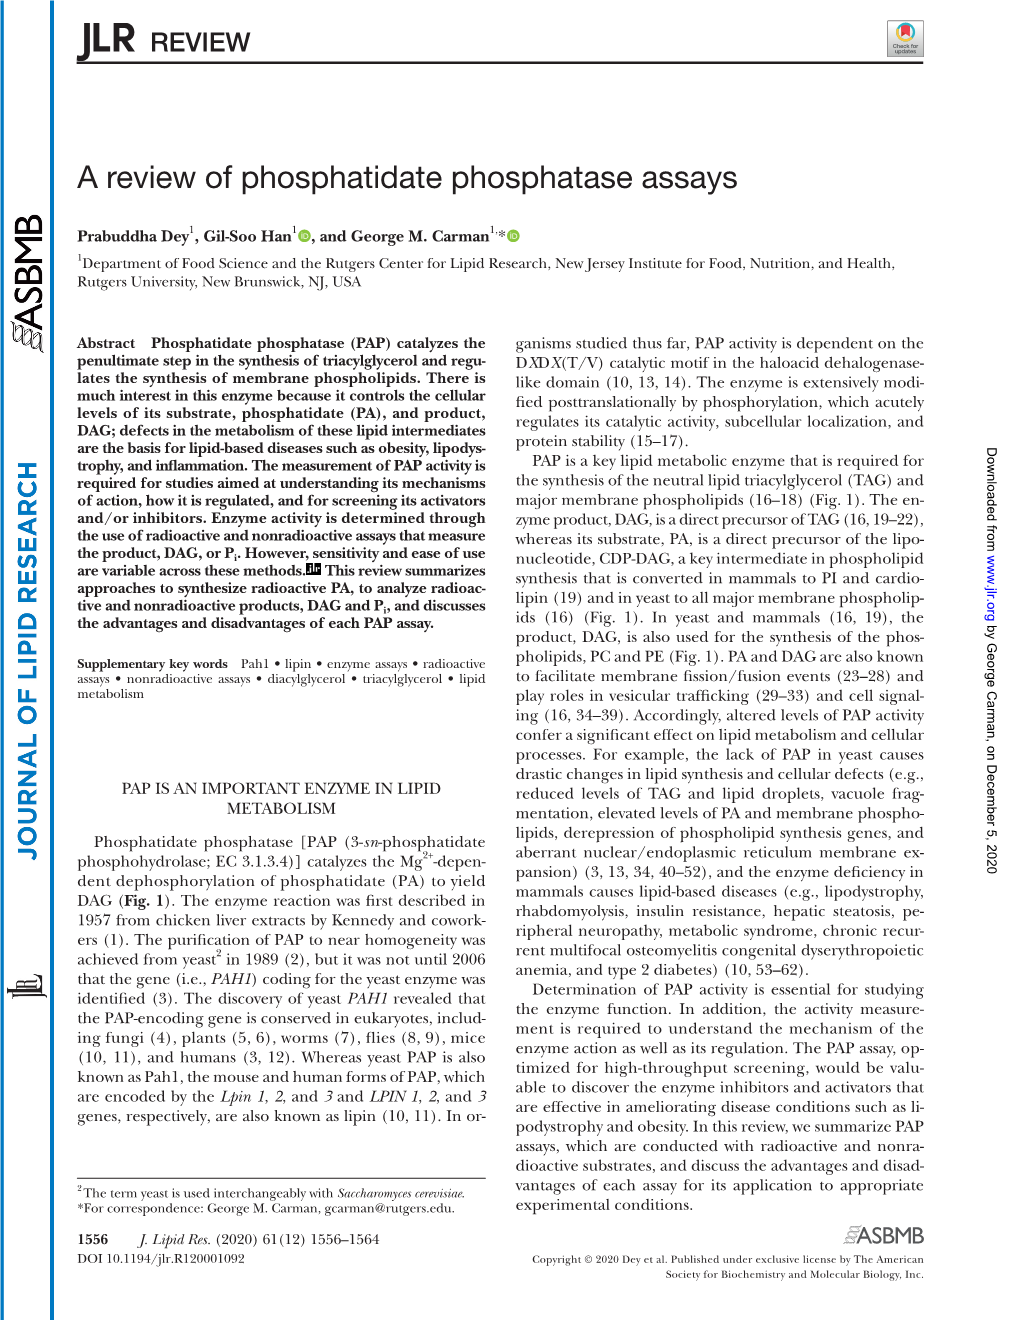 A Review of Phosphatidate Phosphatase Assays